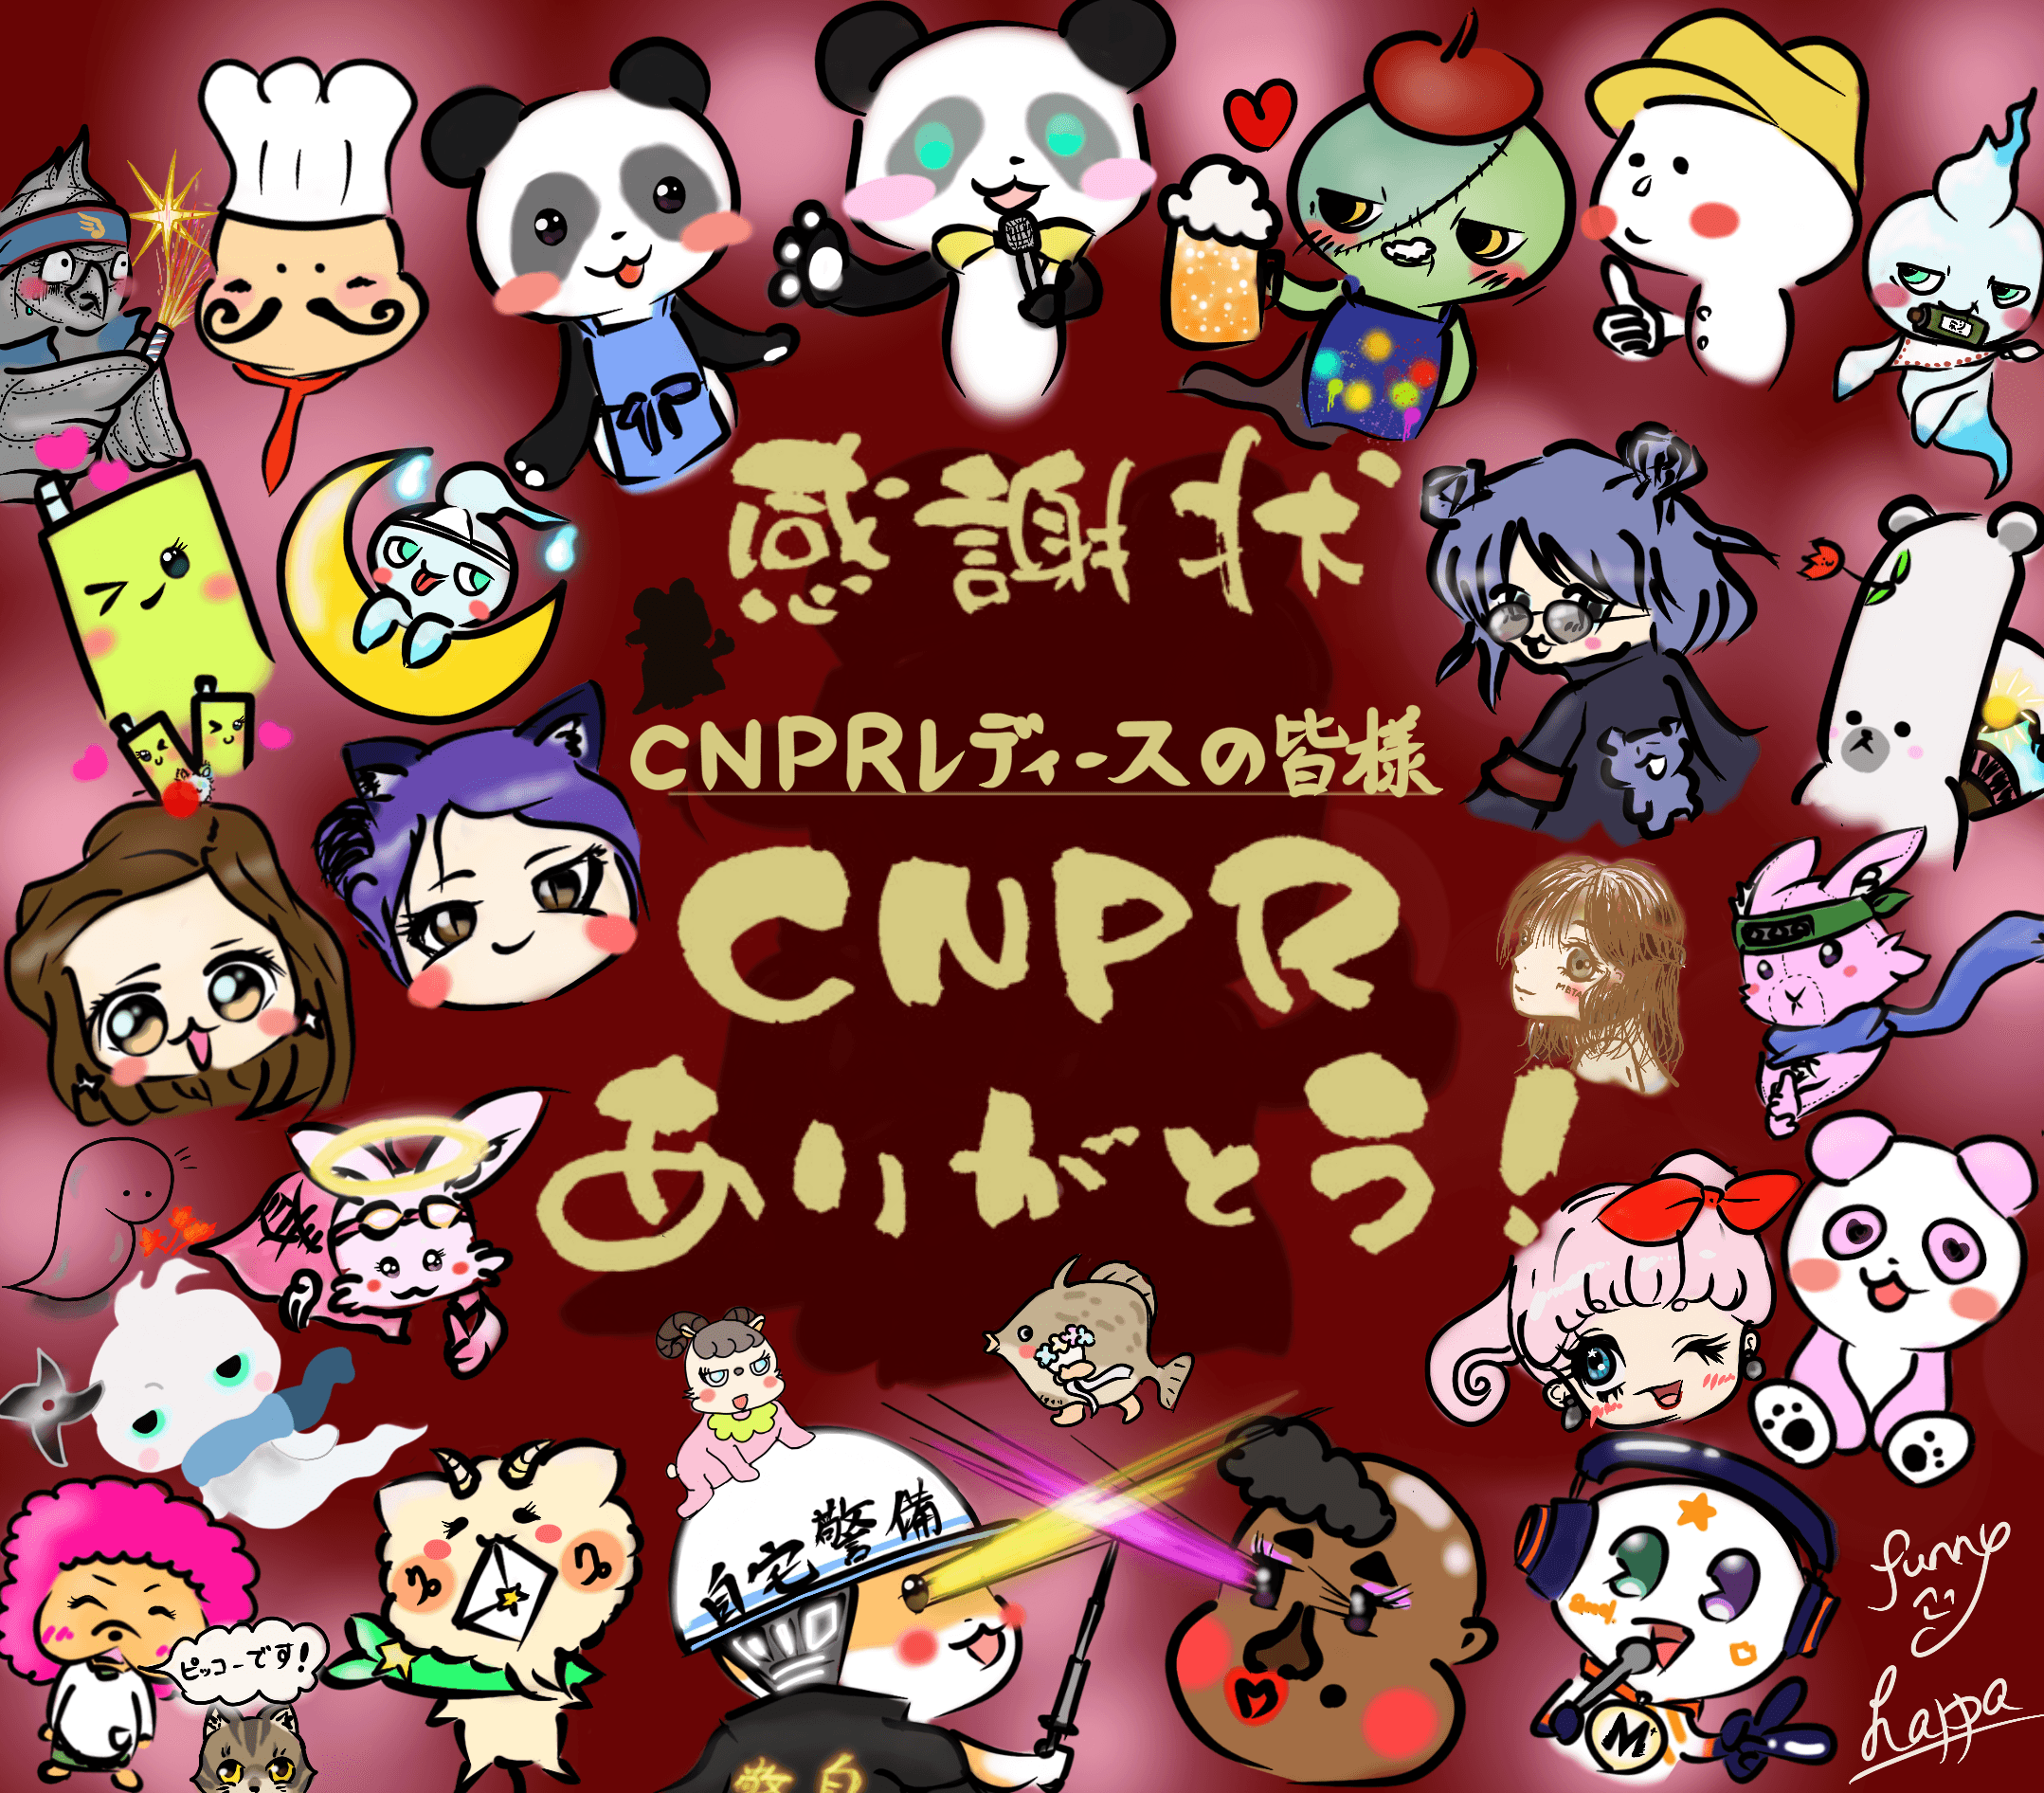 CNPRレディース集会〜終わりのはじまり〜ver2